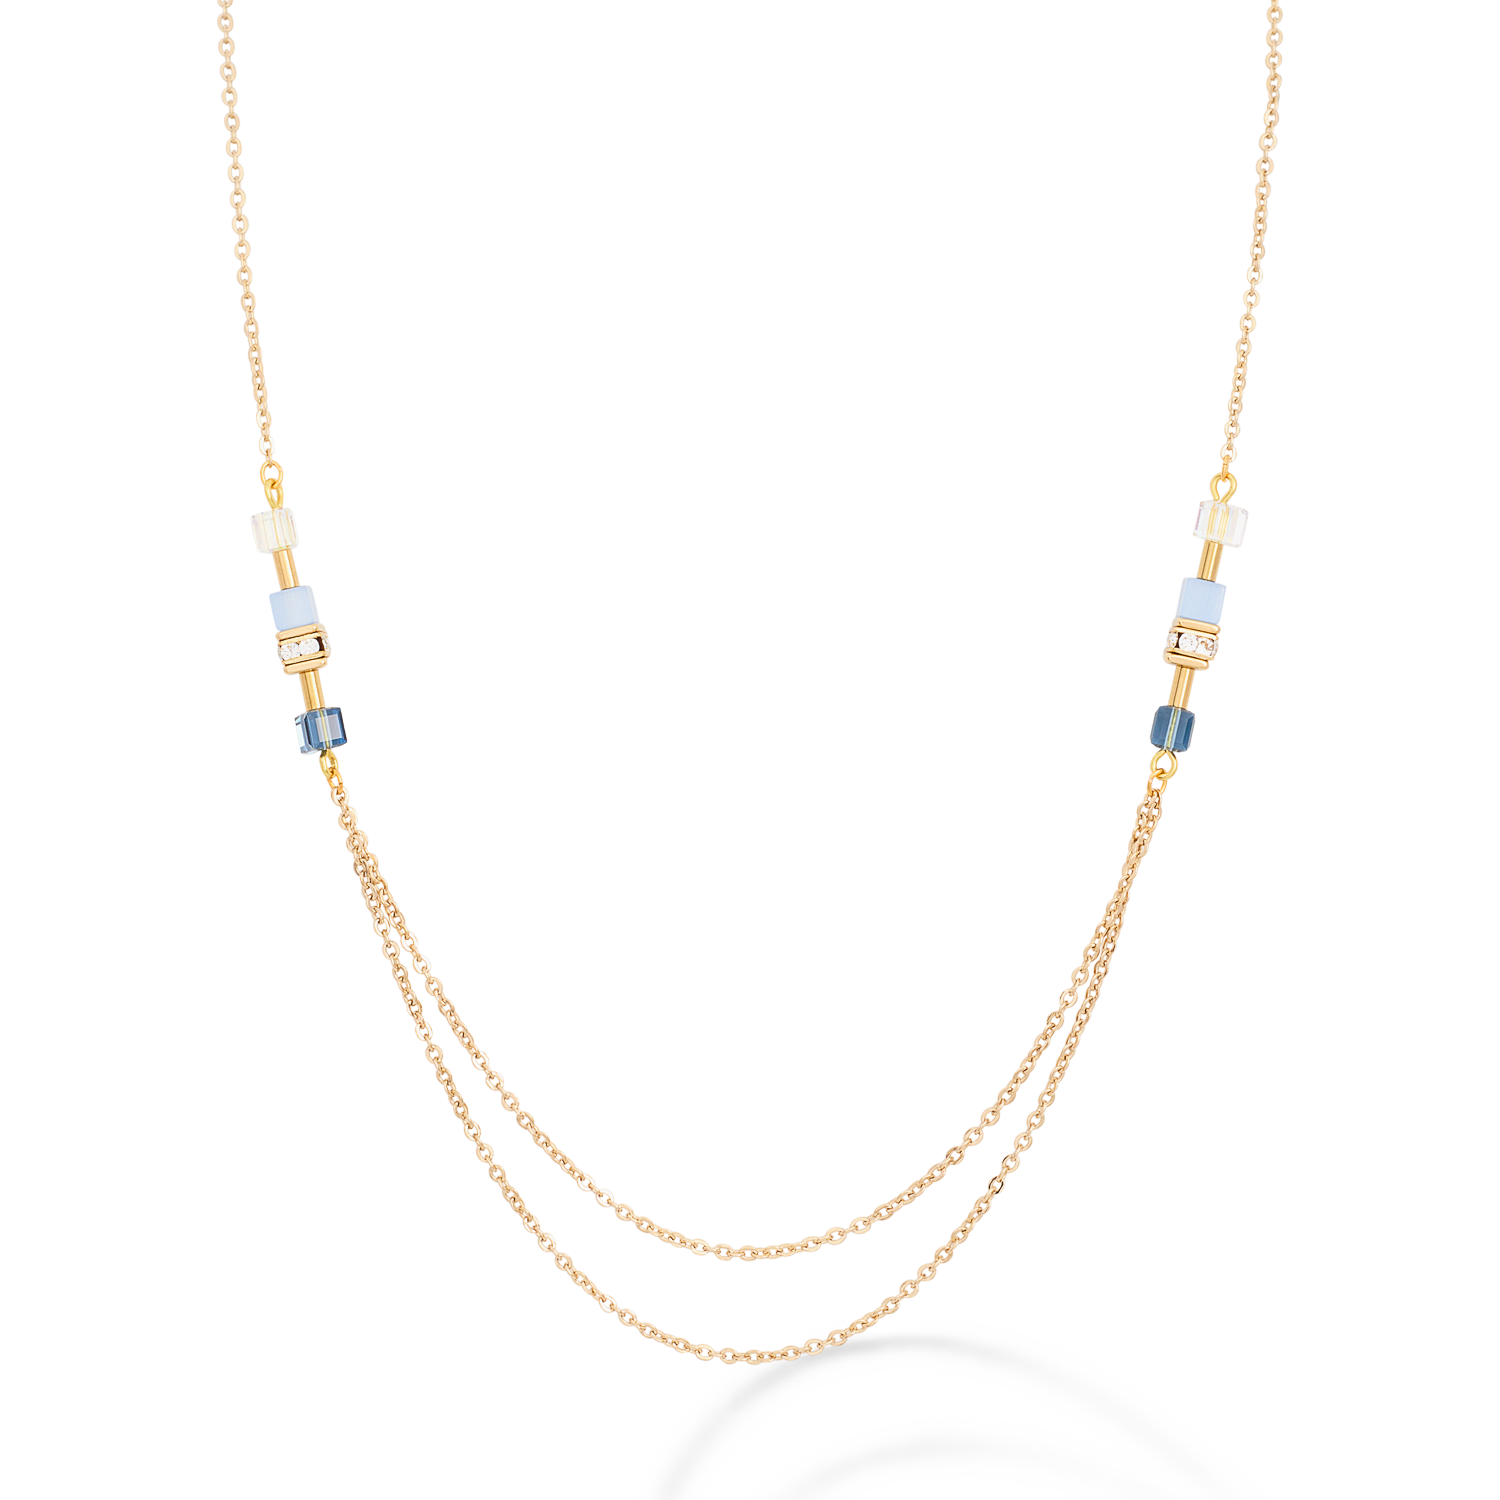 Halskette GeoCUBE® double chain long Edelstahl gold-blau